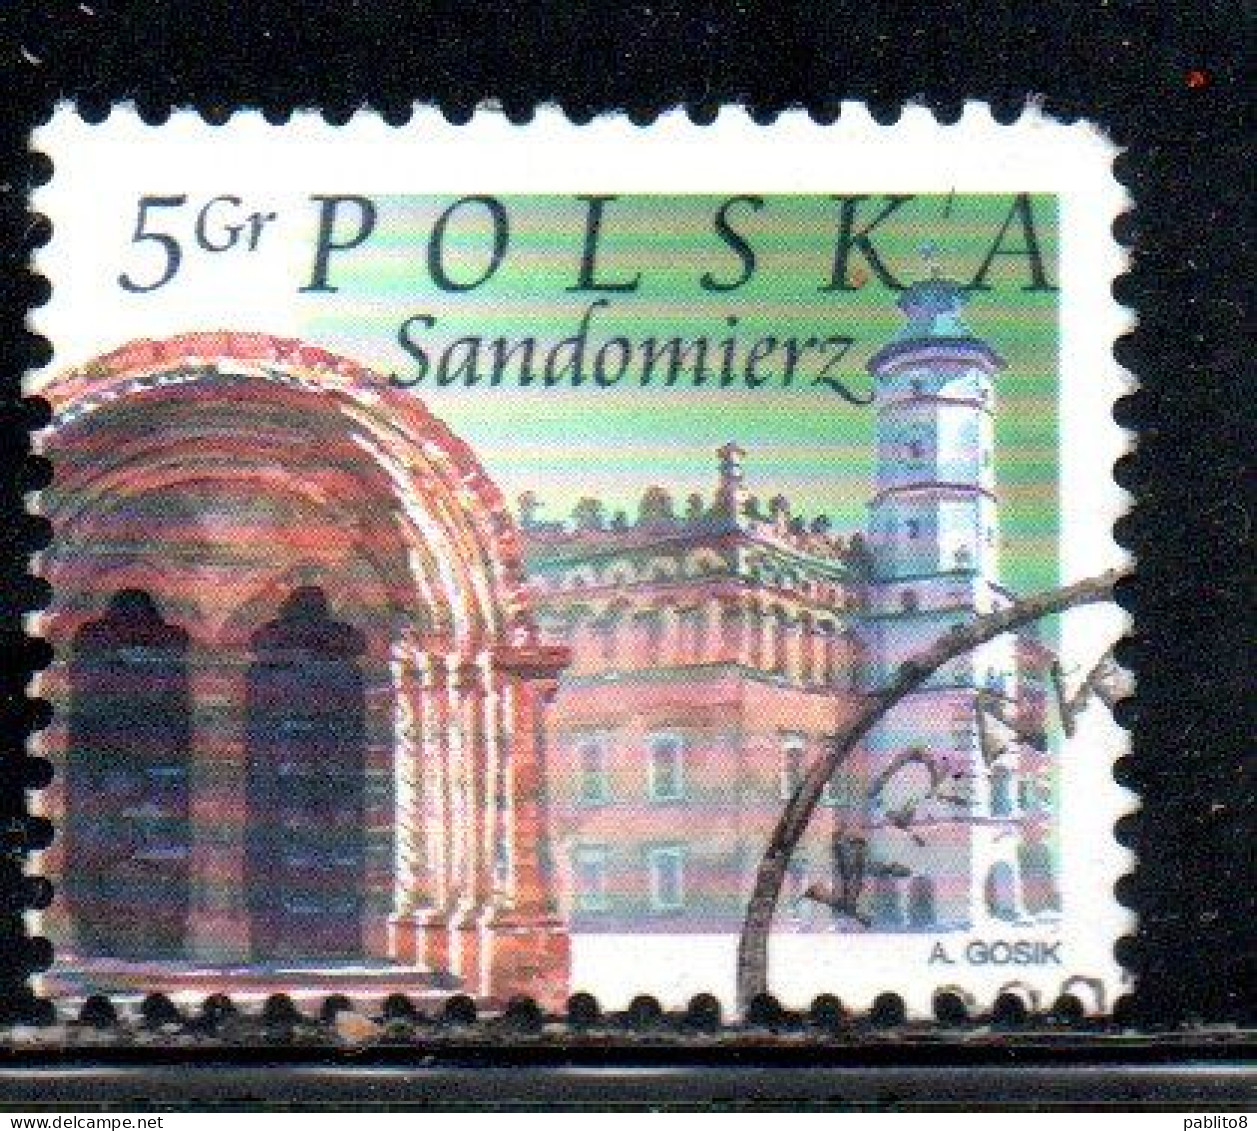 POLONIA POLAND POLSKA 2004 CITY TOWN HALL CHURCH ARCHWAY SANDOMIERZ 5g USATO USED OBLITERE' - Usados